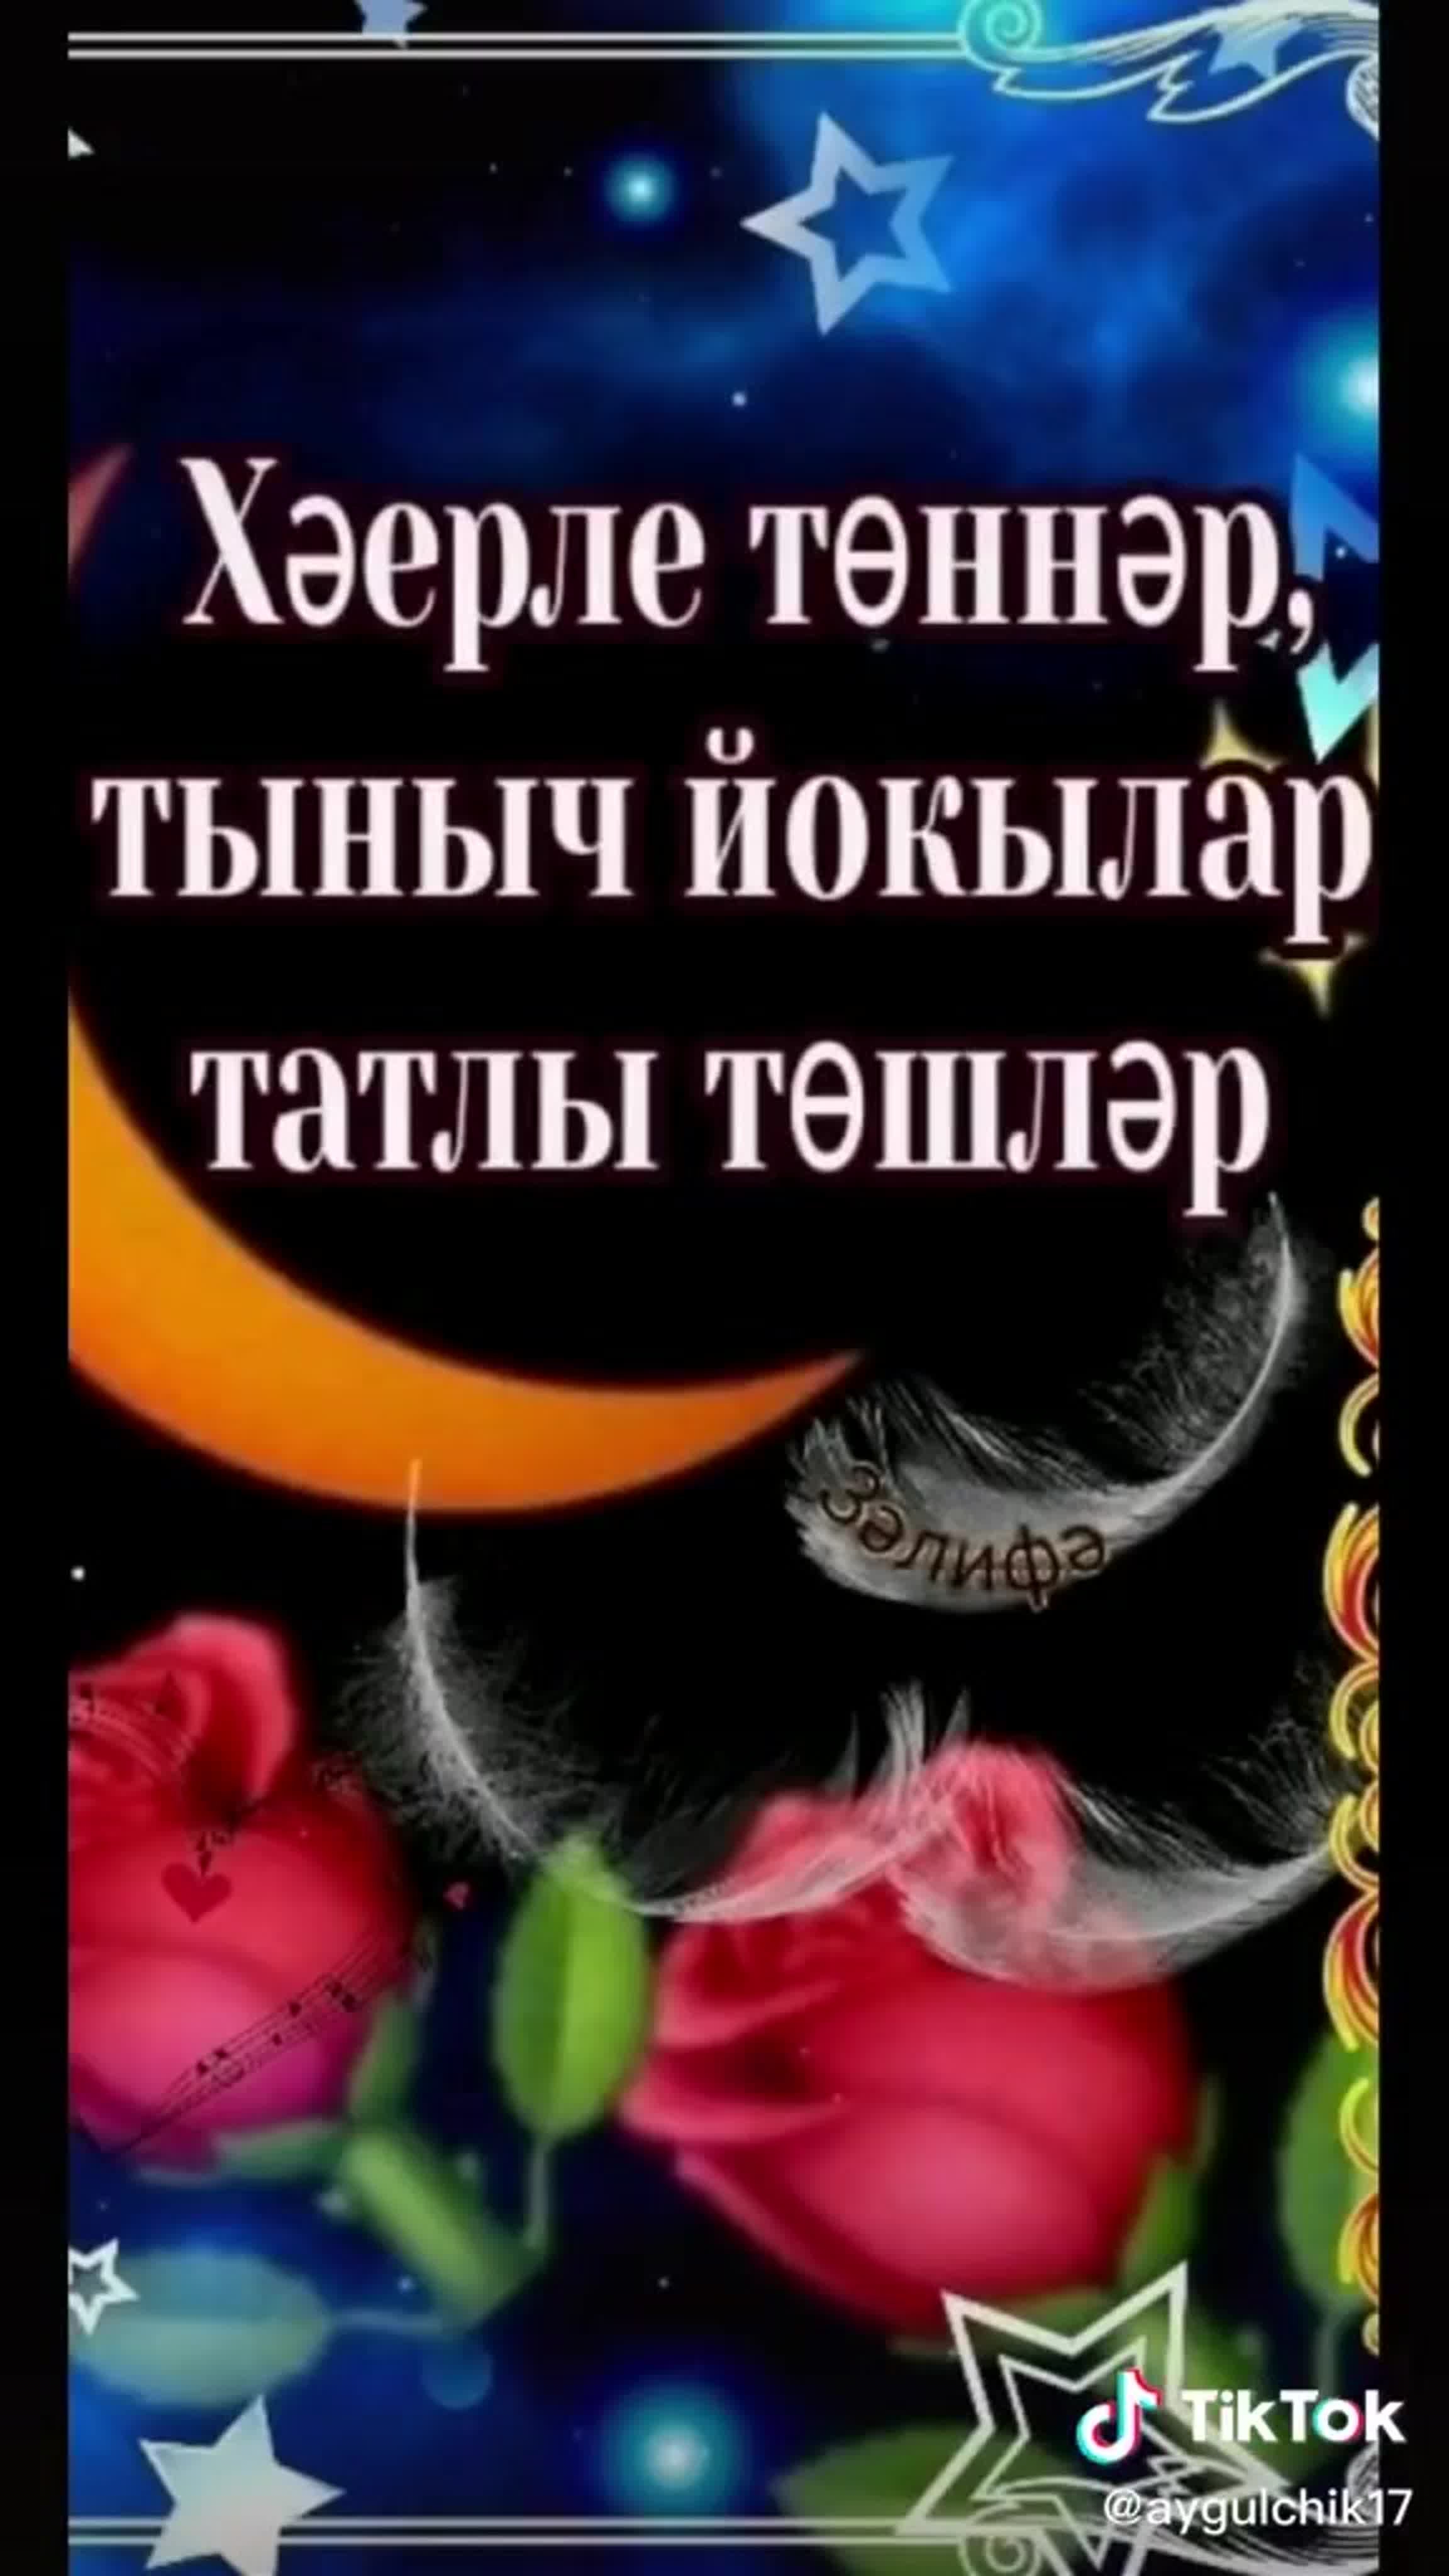 Спокойной ночи на татарском языке